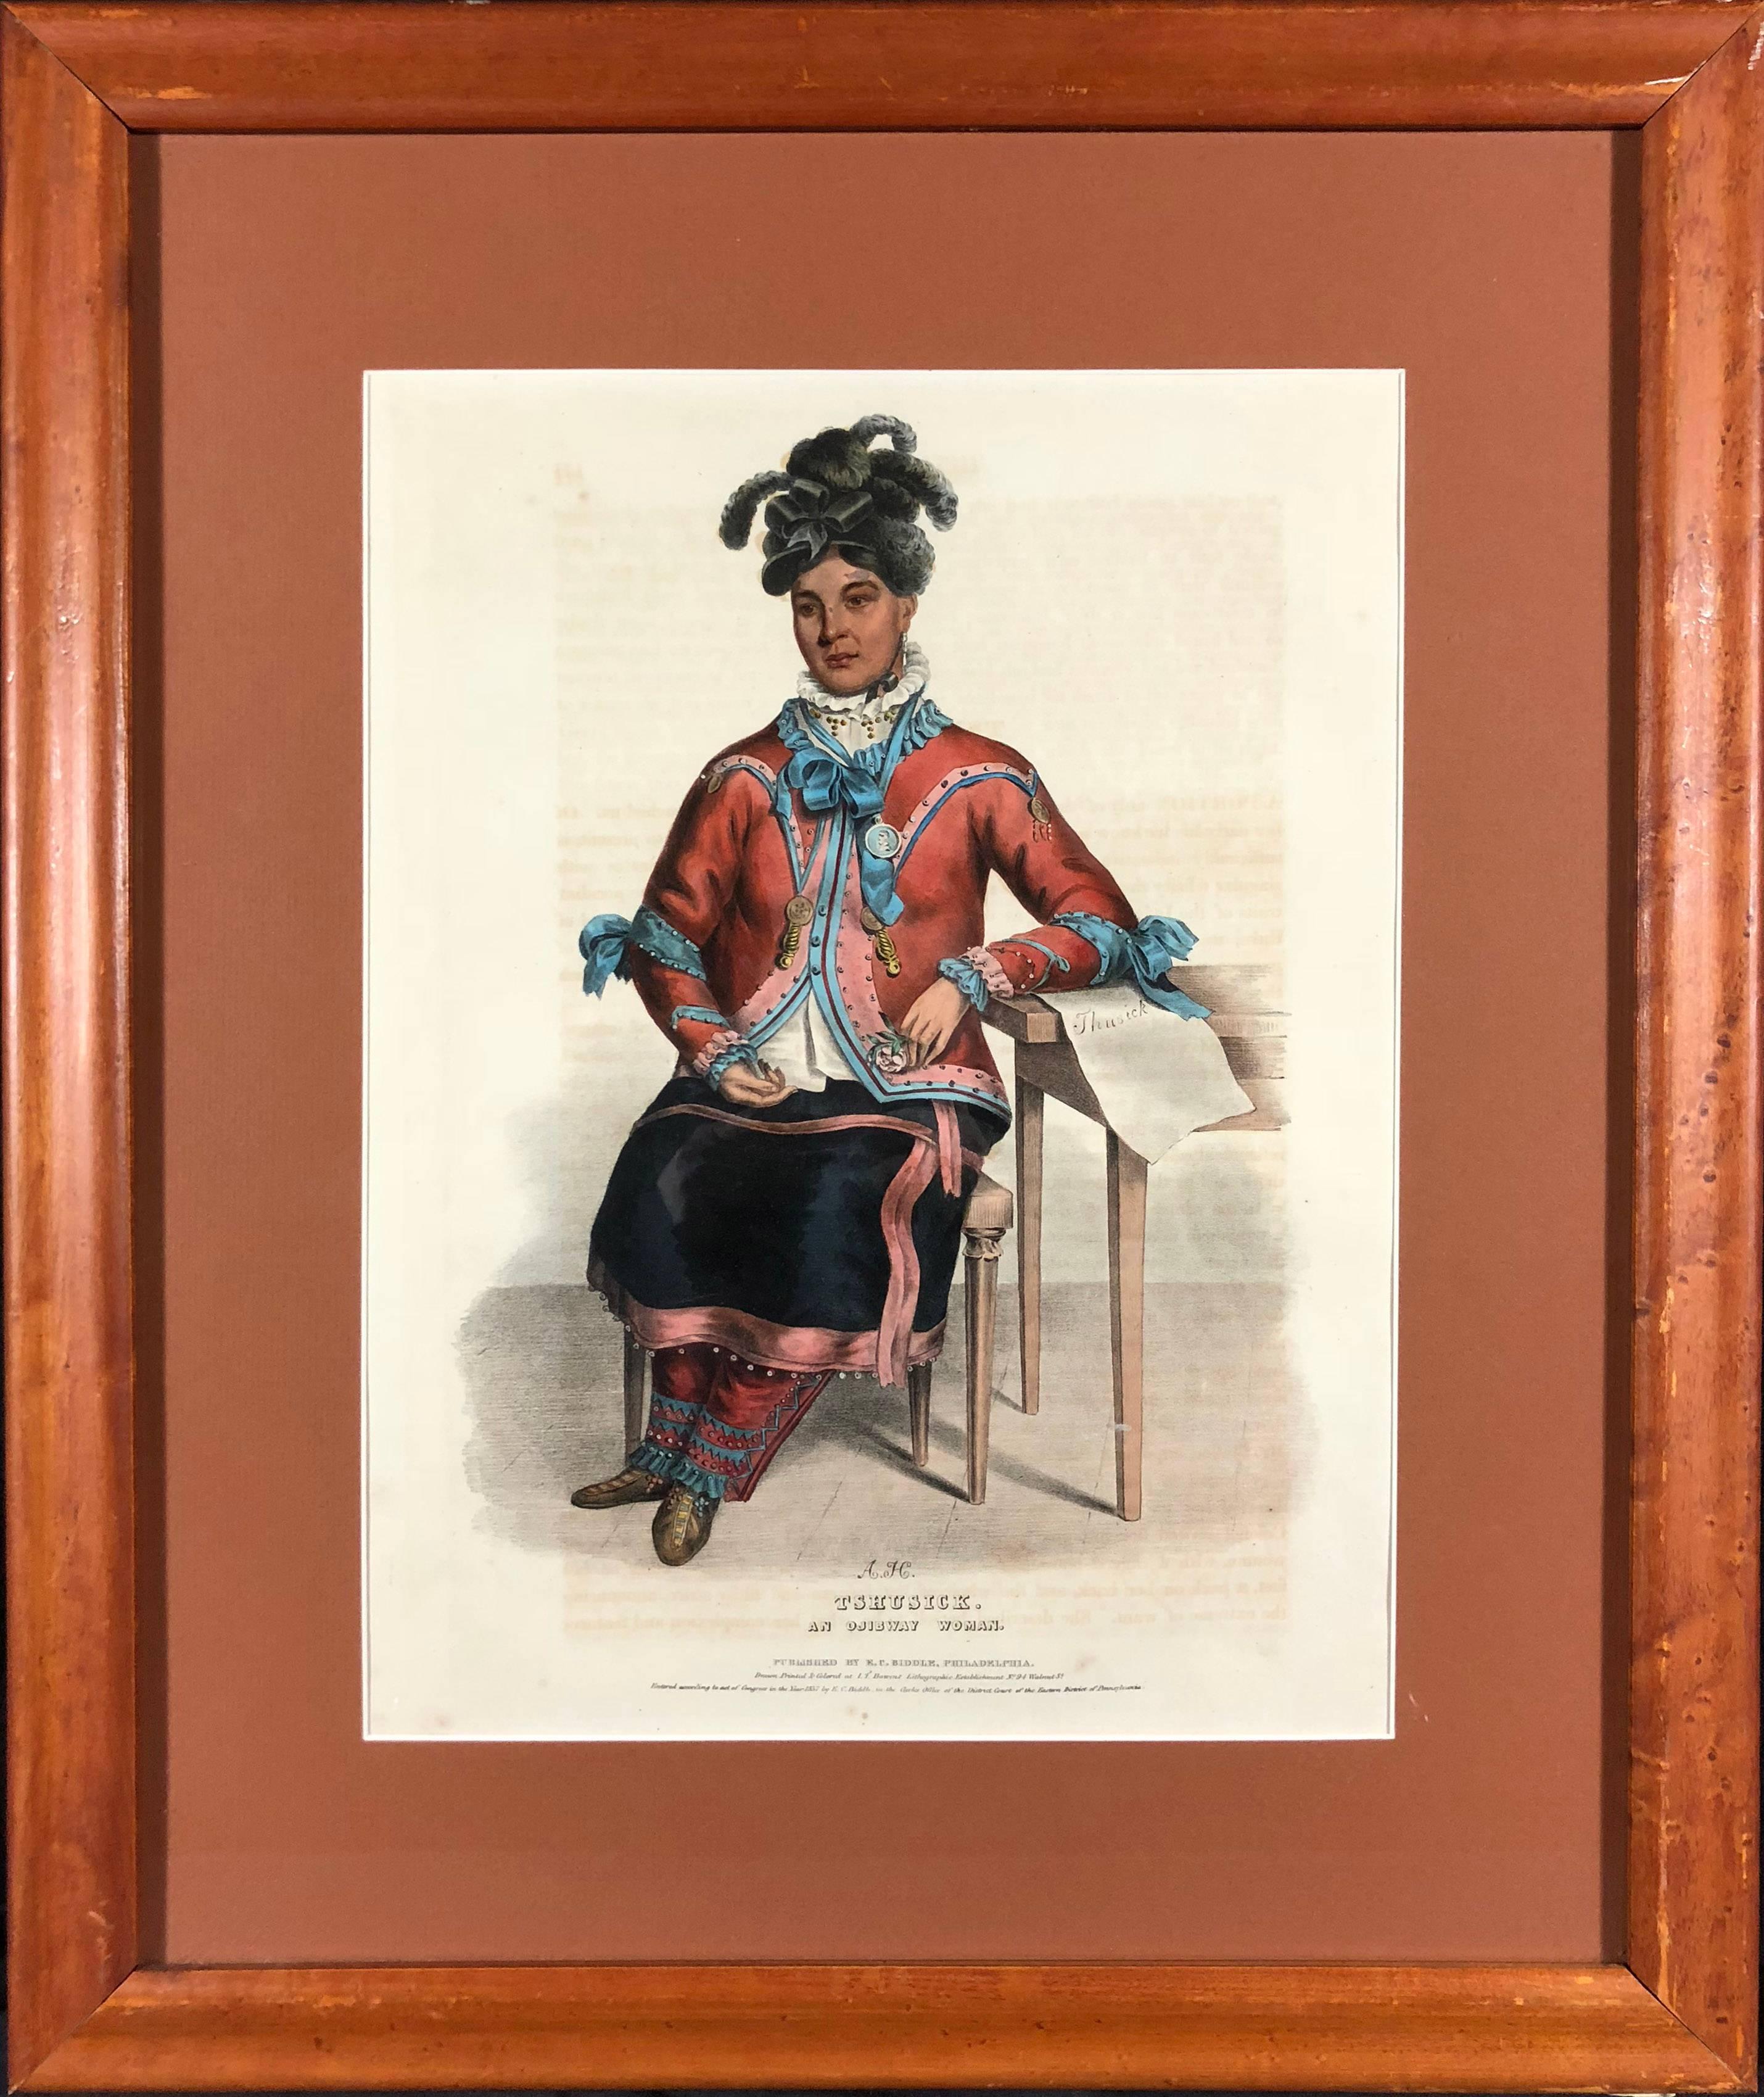 Tshusick, An Ojibway Woman - Print by McKenney & Hall